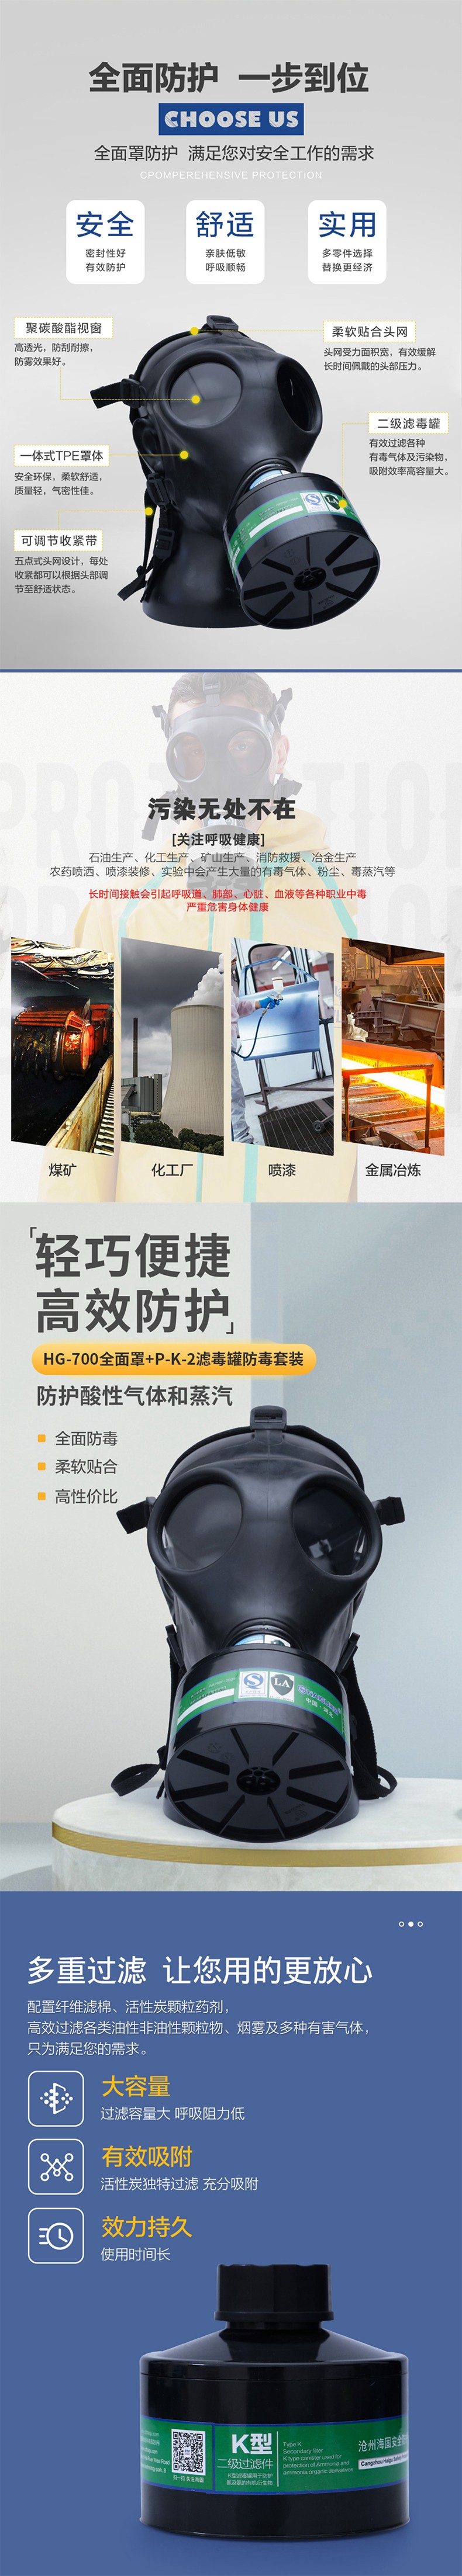 海固HG-700 P-K-2防毒面具套装图片1